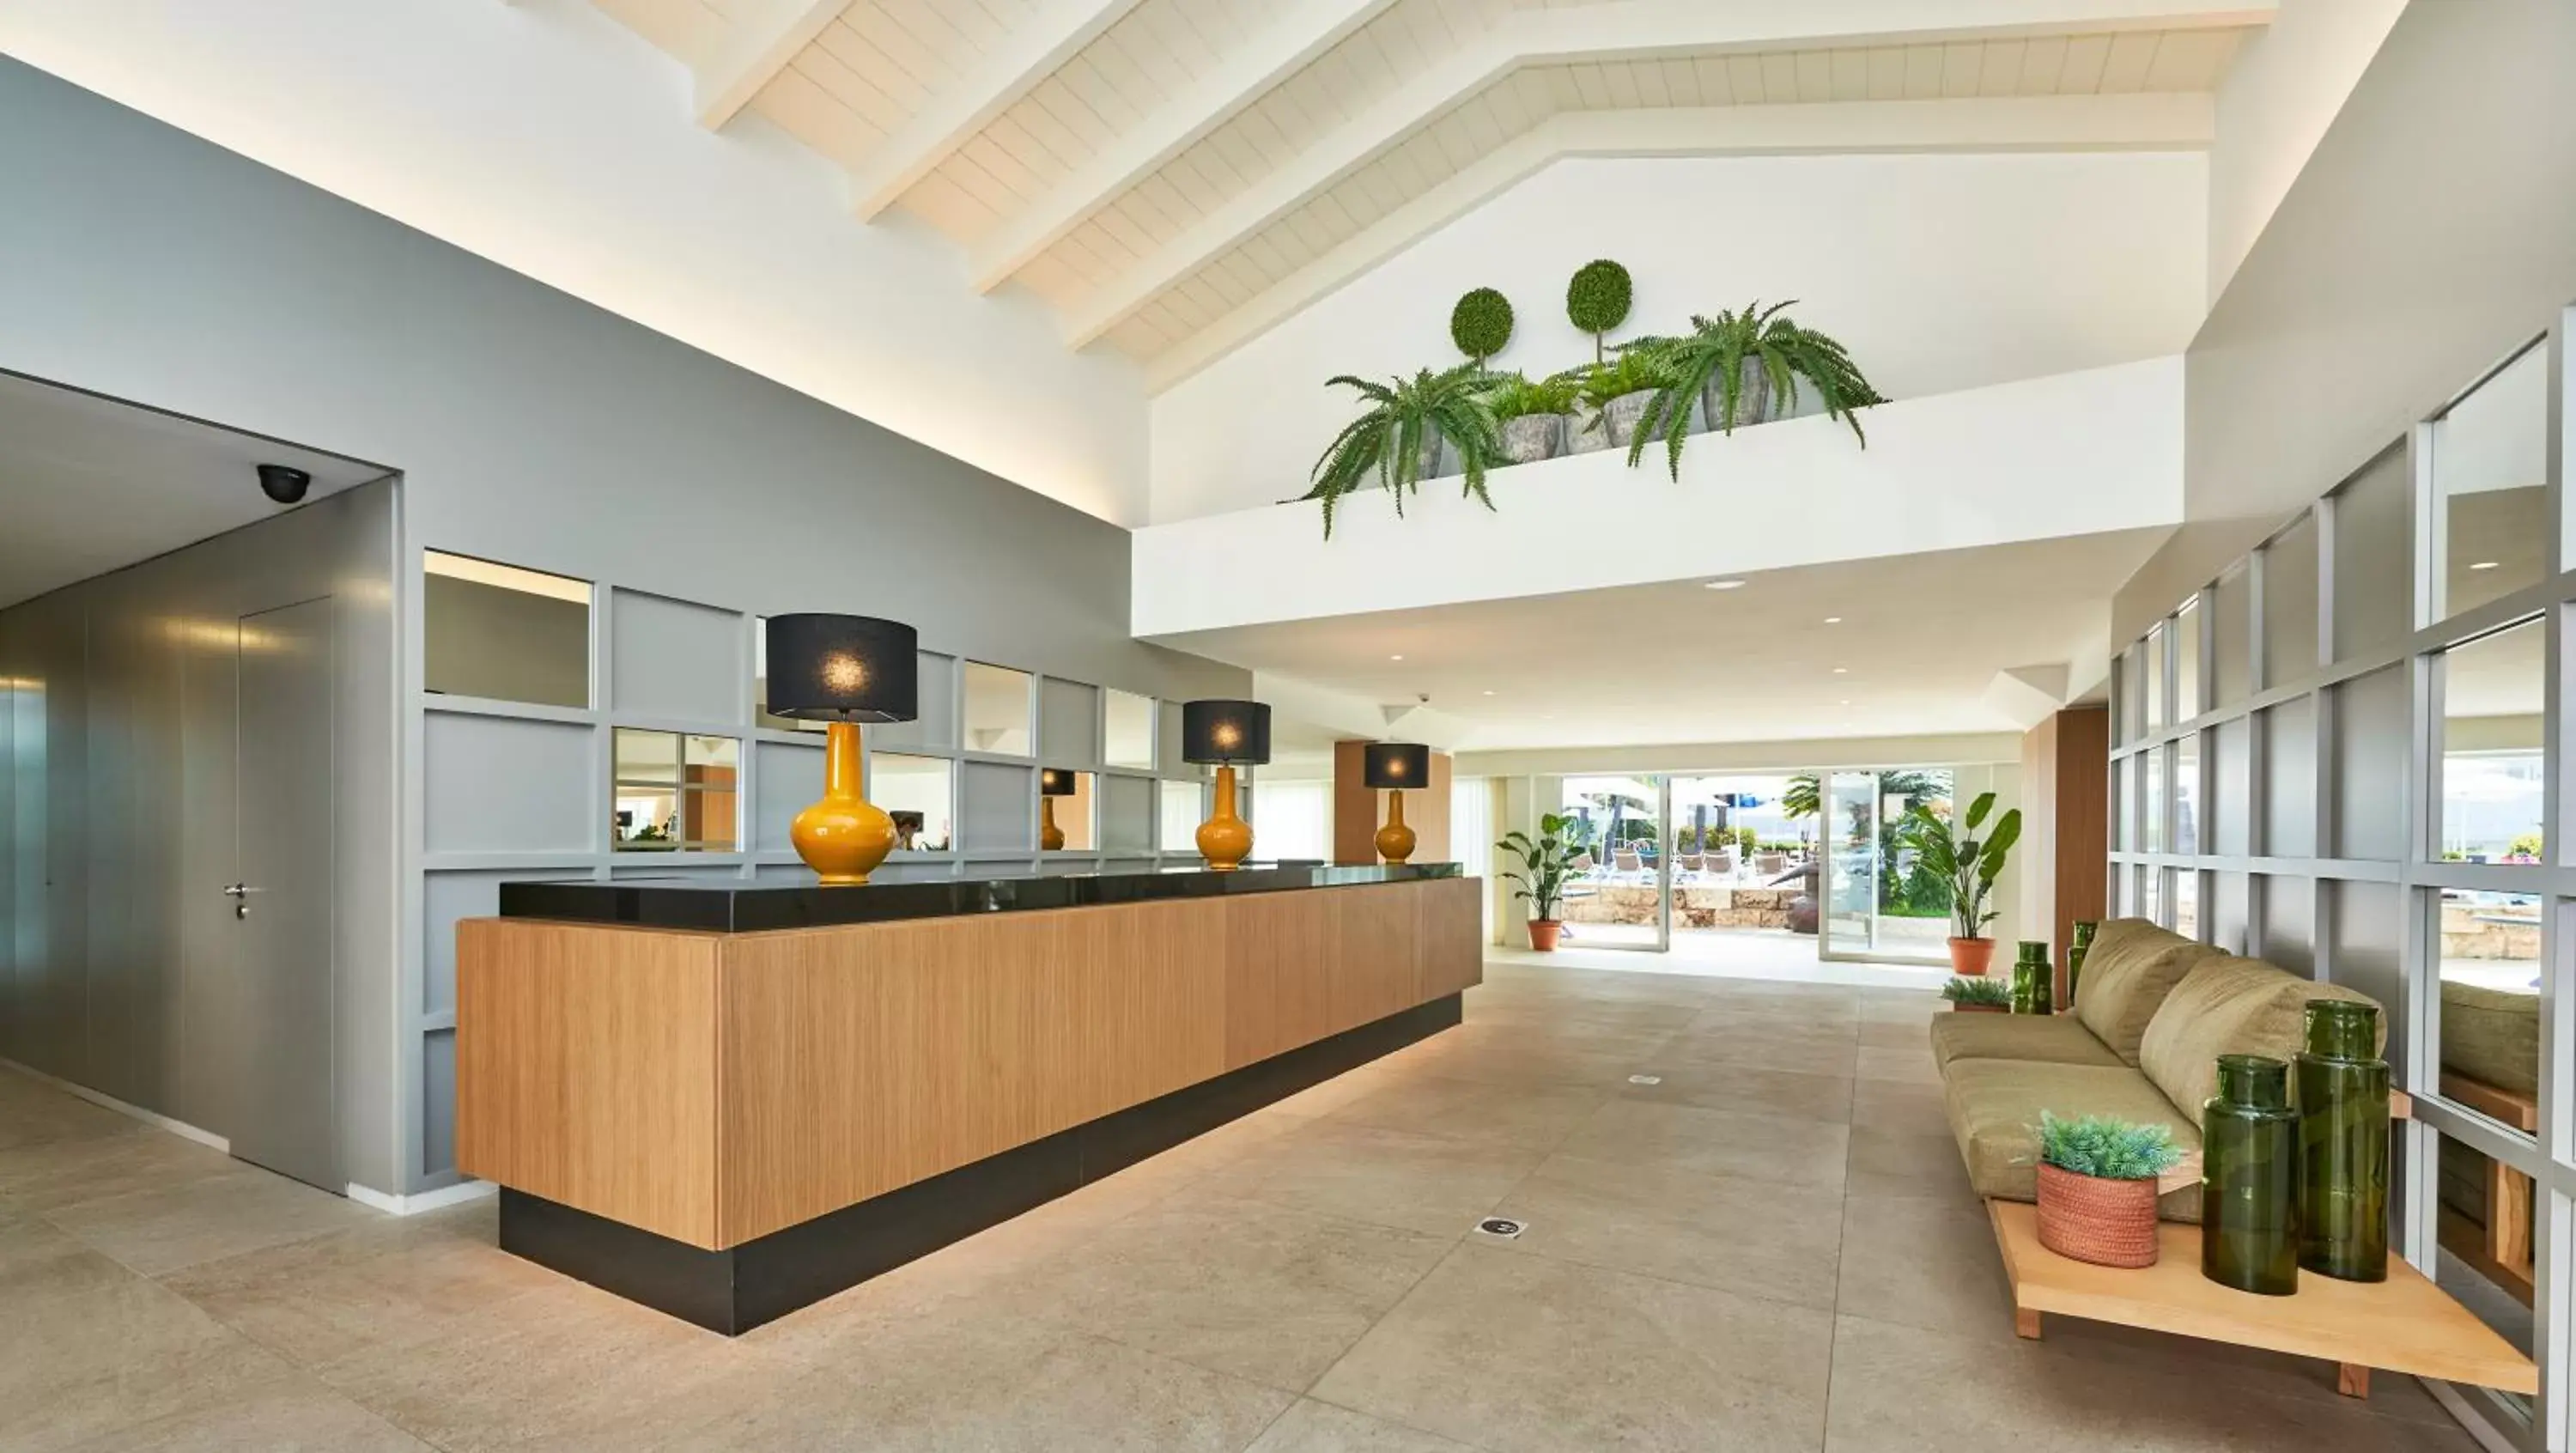 Lobby or reception, Lobby/Reception in Hoposa Hotel & Apartaments VillaConcha